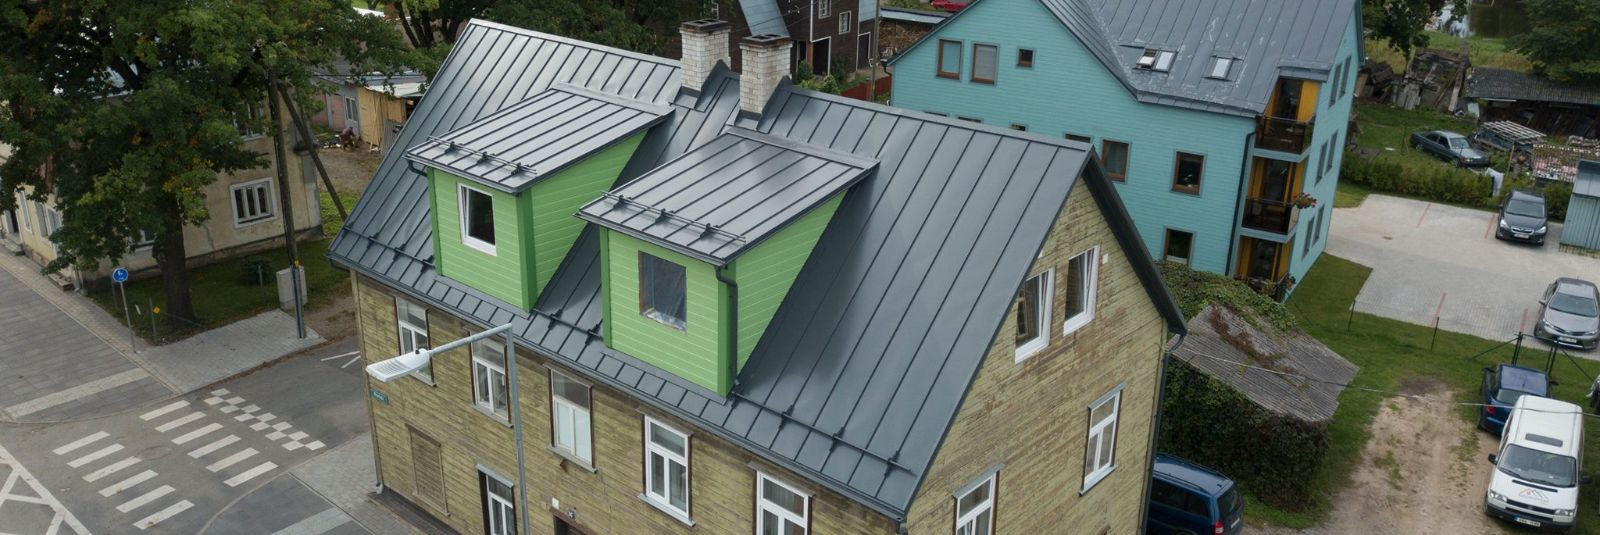 Kui seisate silmitsi katuse uuendamise või renoveerimisega, tekib sageli küsimus: milline katusematerjal valida? Steel.ee OÜ on siin, et aidata teil leida õige 